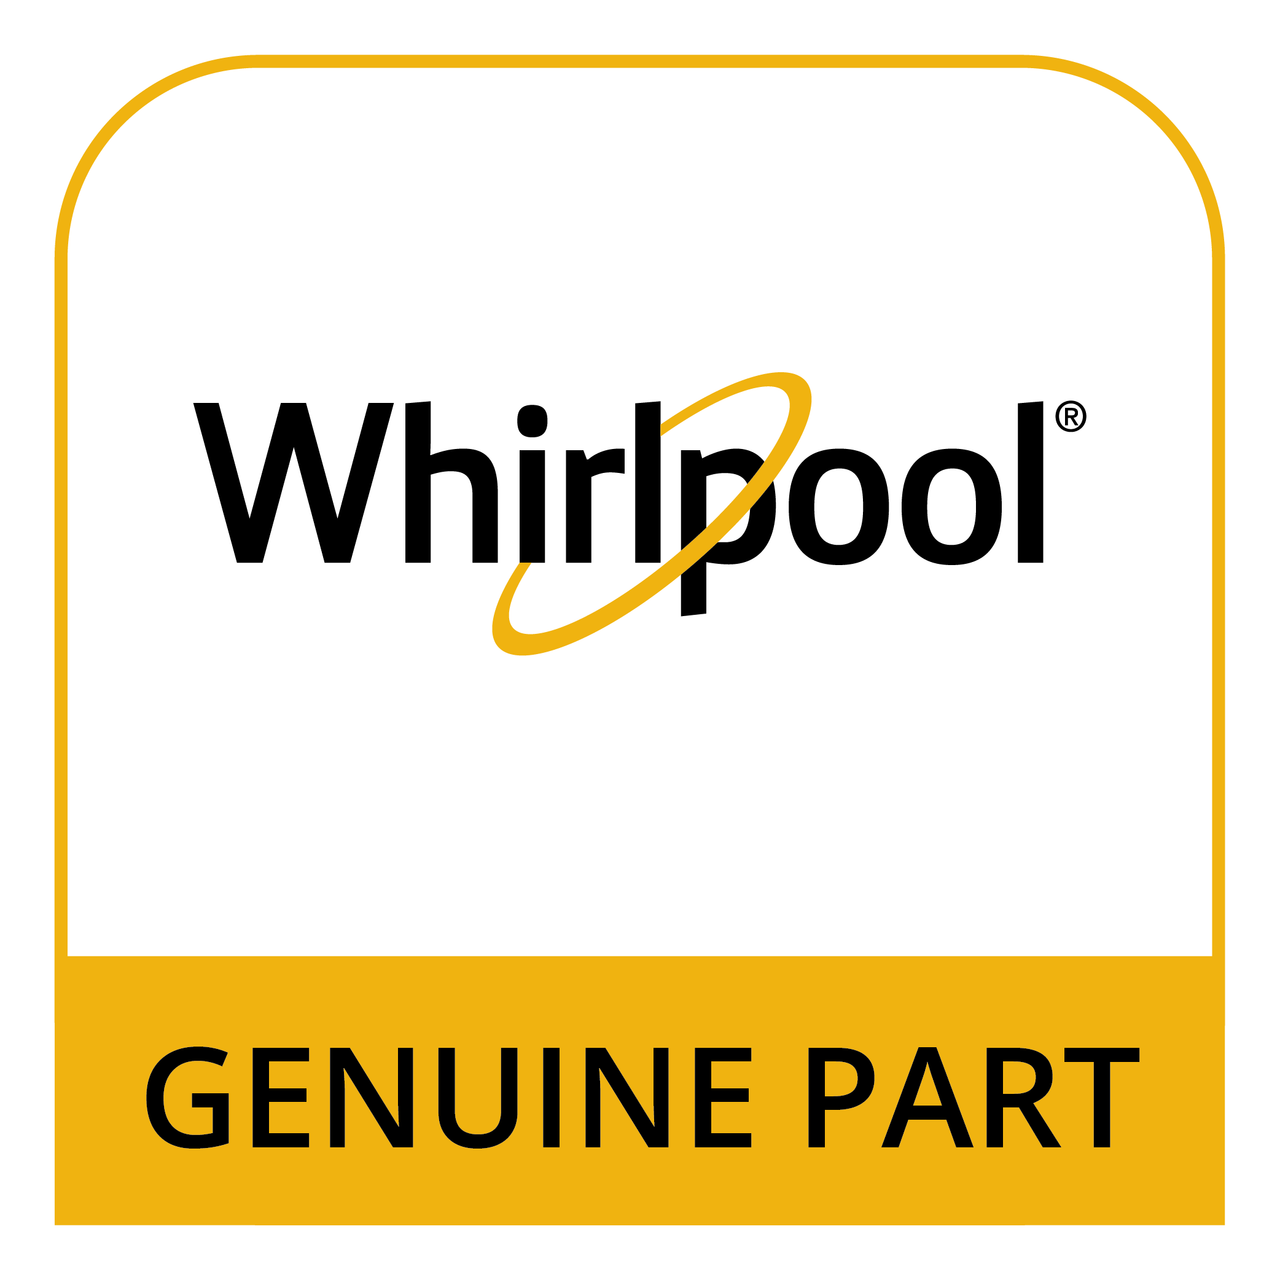 Whirlpool WFR142554 - 1 1/4" 90 *Non-Wise* - Genuine Part